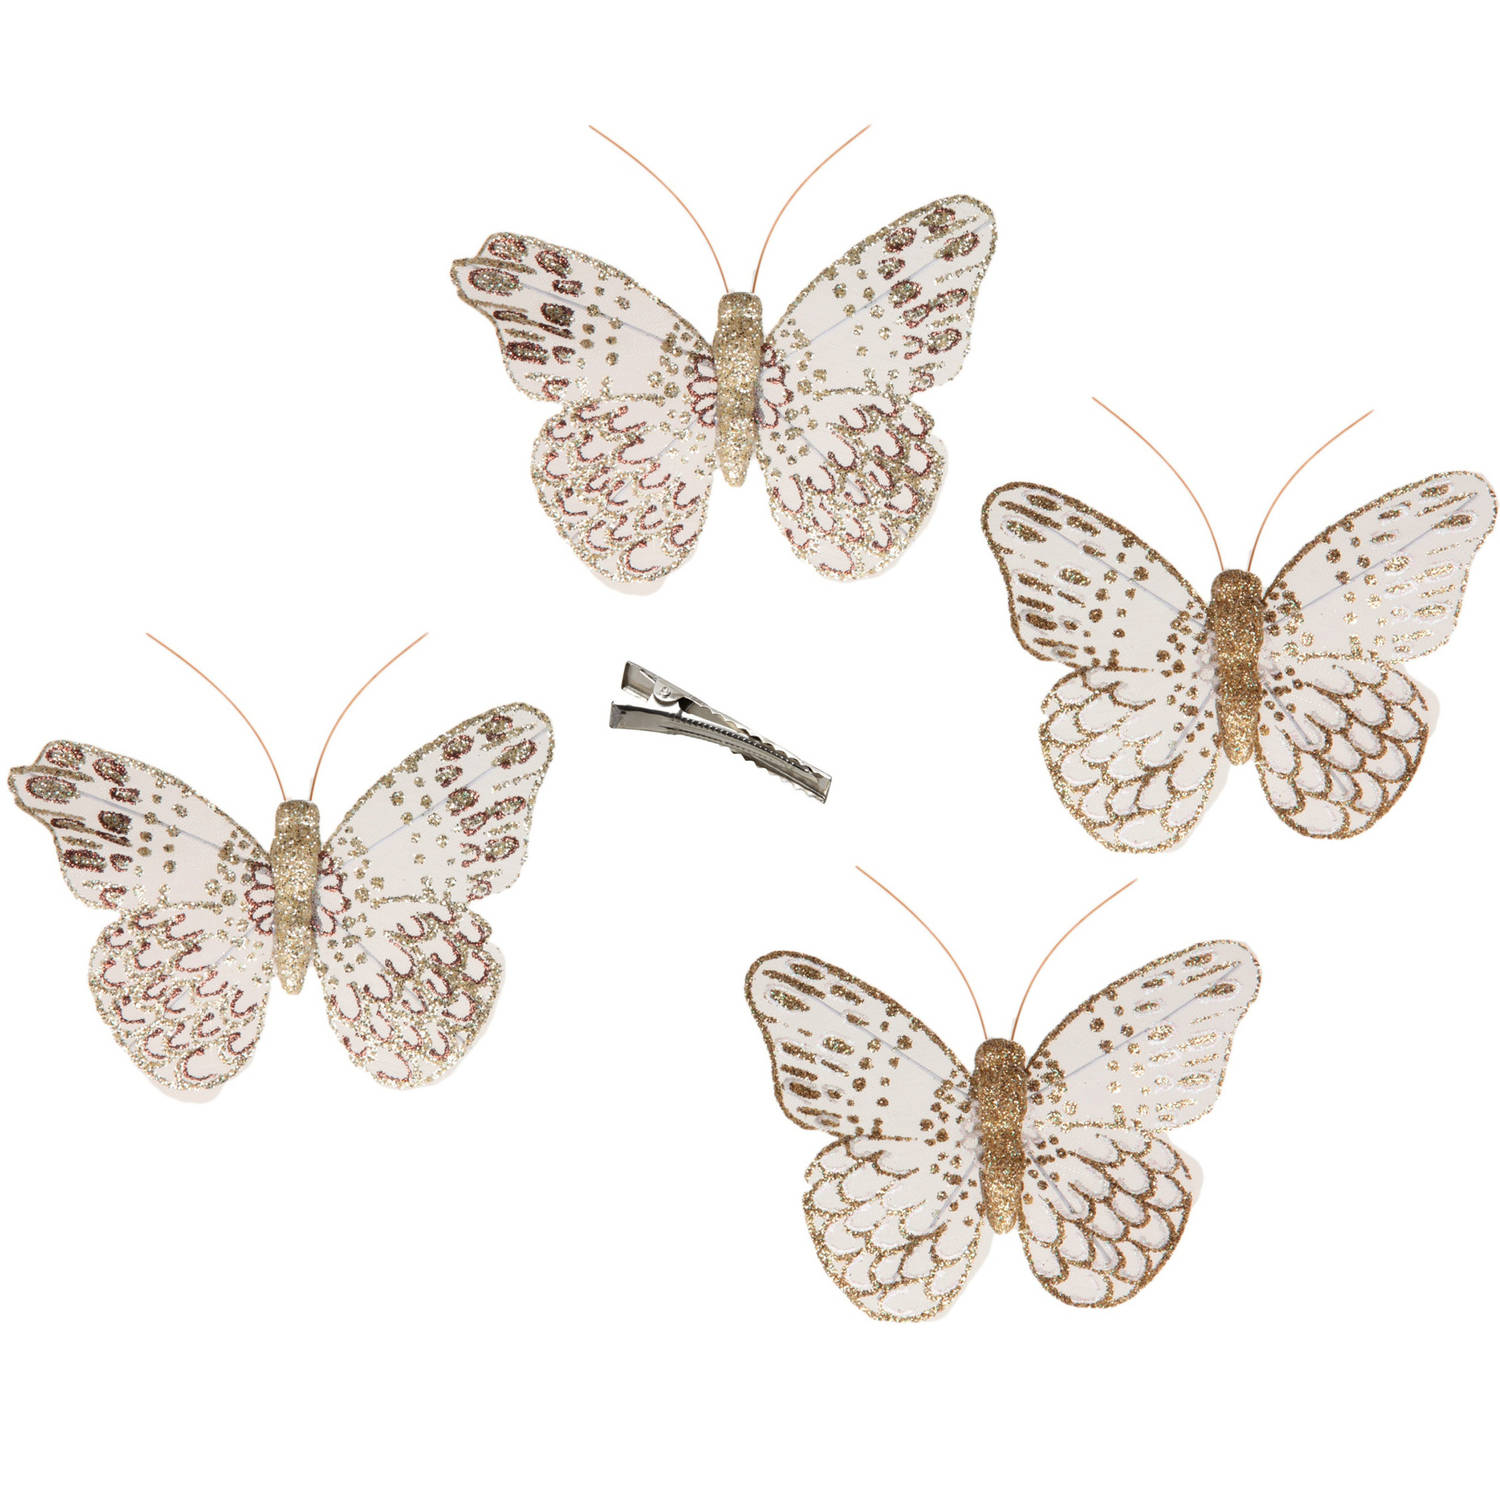 12x Stuks Decoratie Vlinders Op Clip Goud Glitter 10 X 8 Cm Hobbydecoratieobject